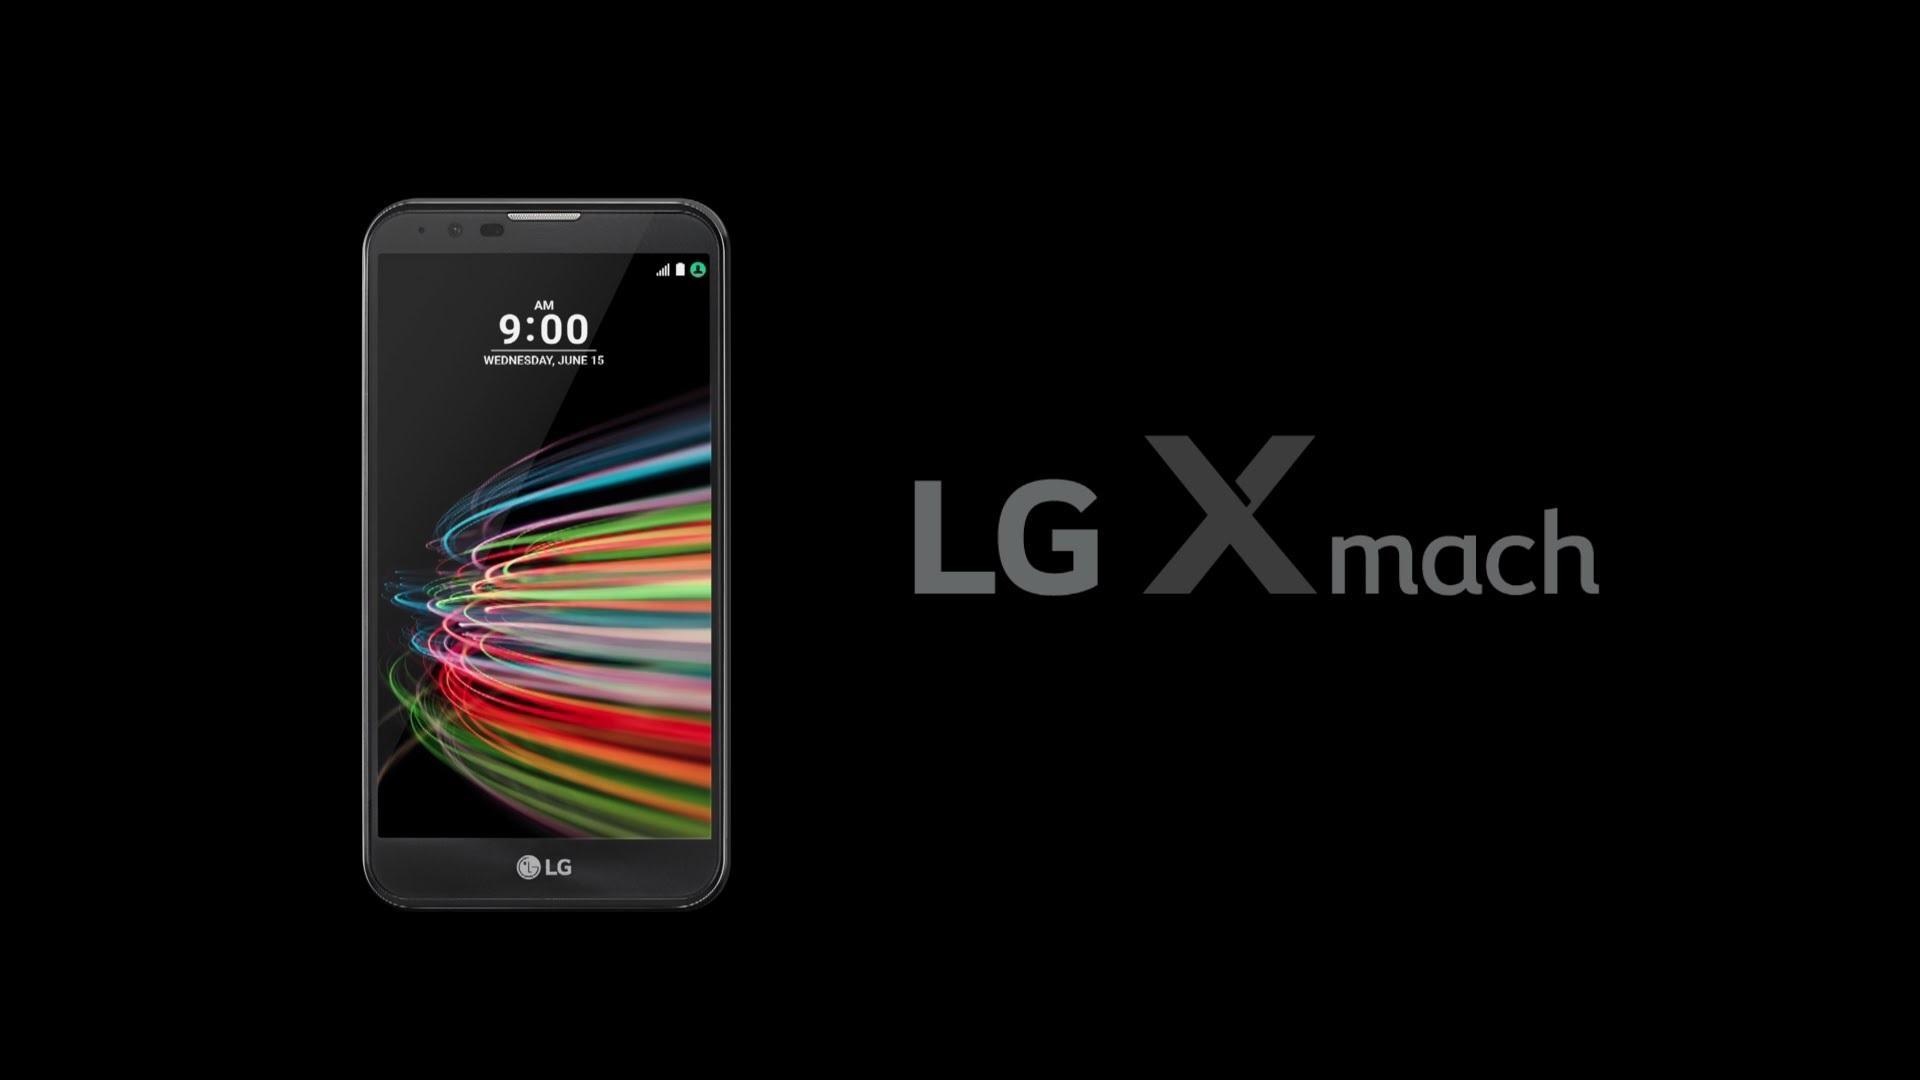 تیزر رسمی معرفی ال جی ایکس مچ - LG X mach